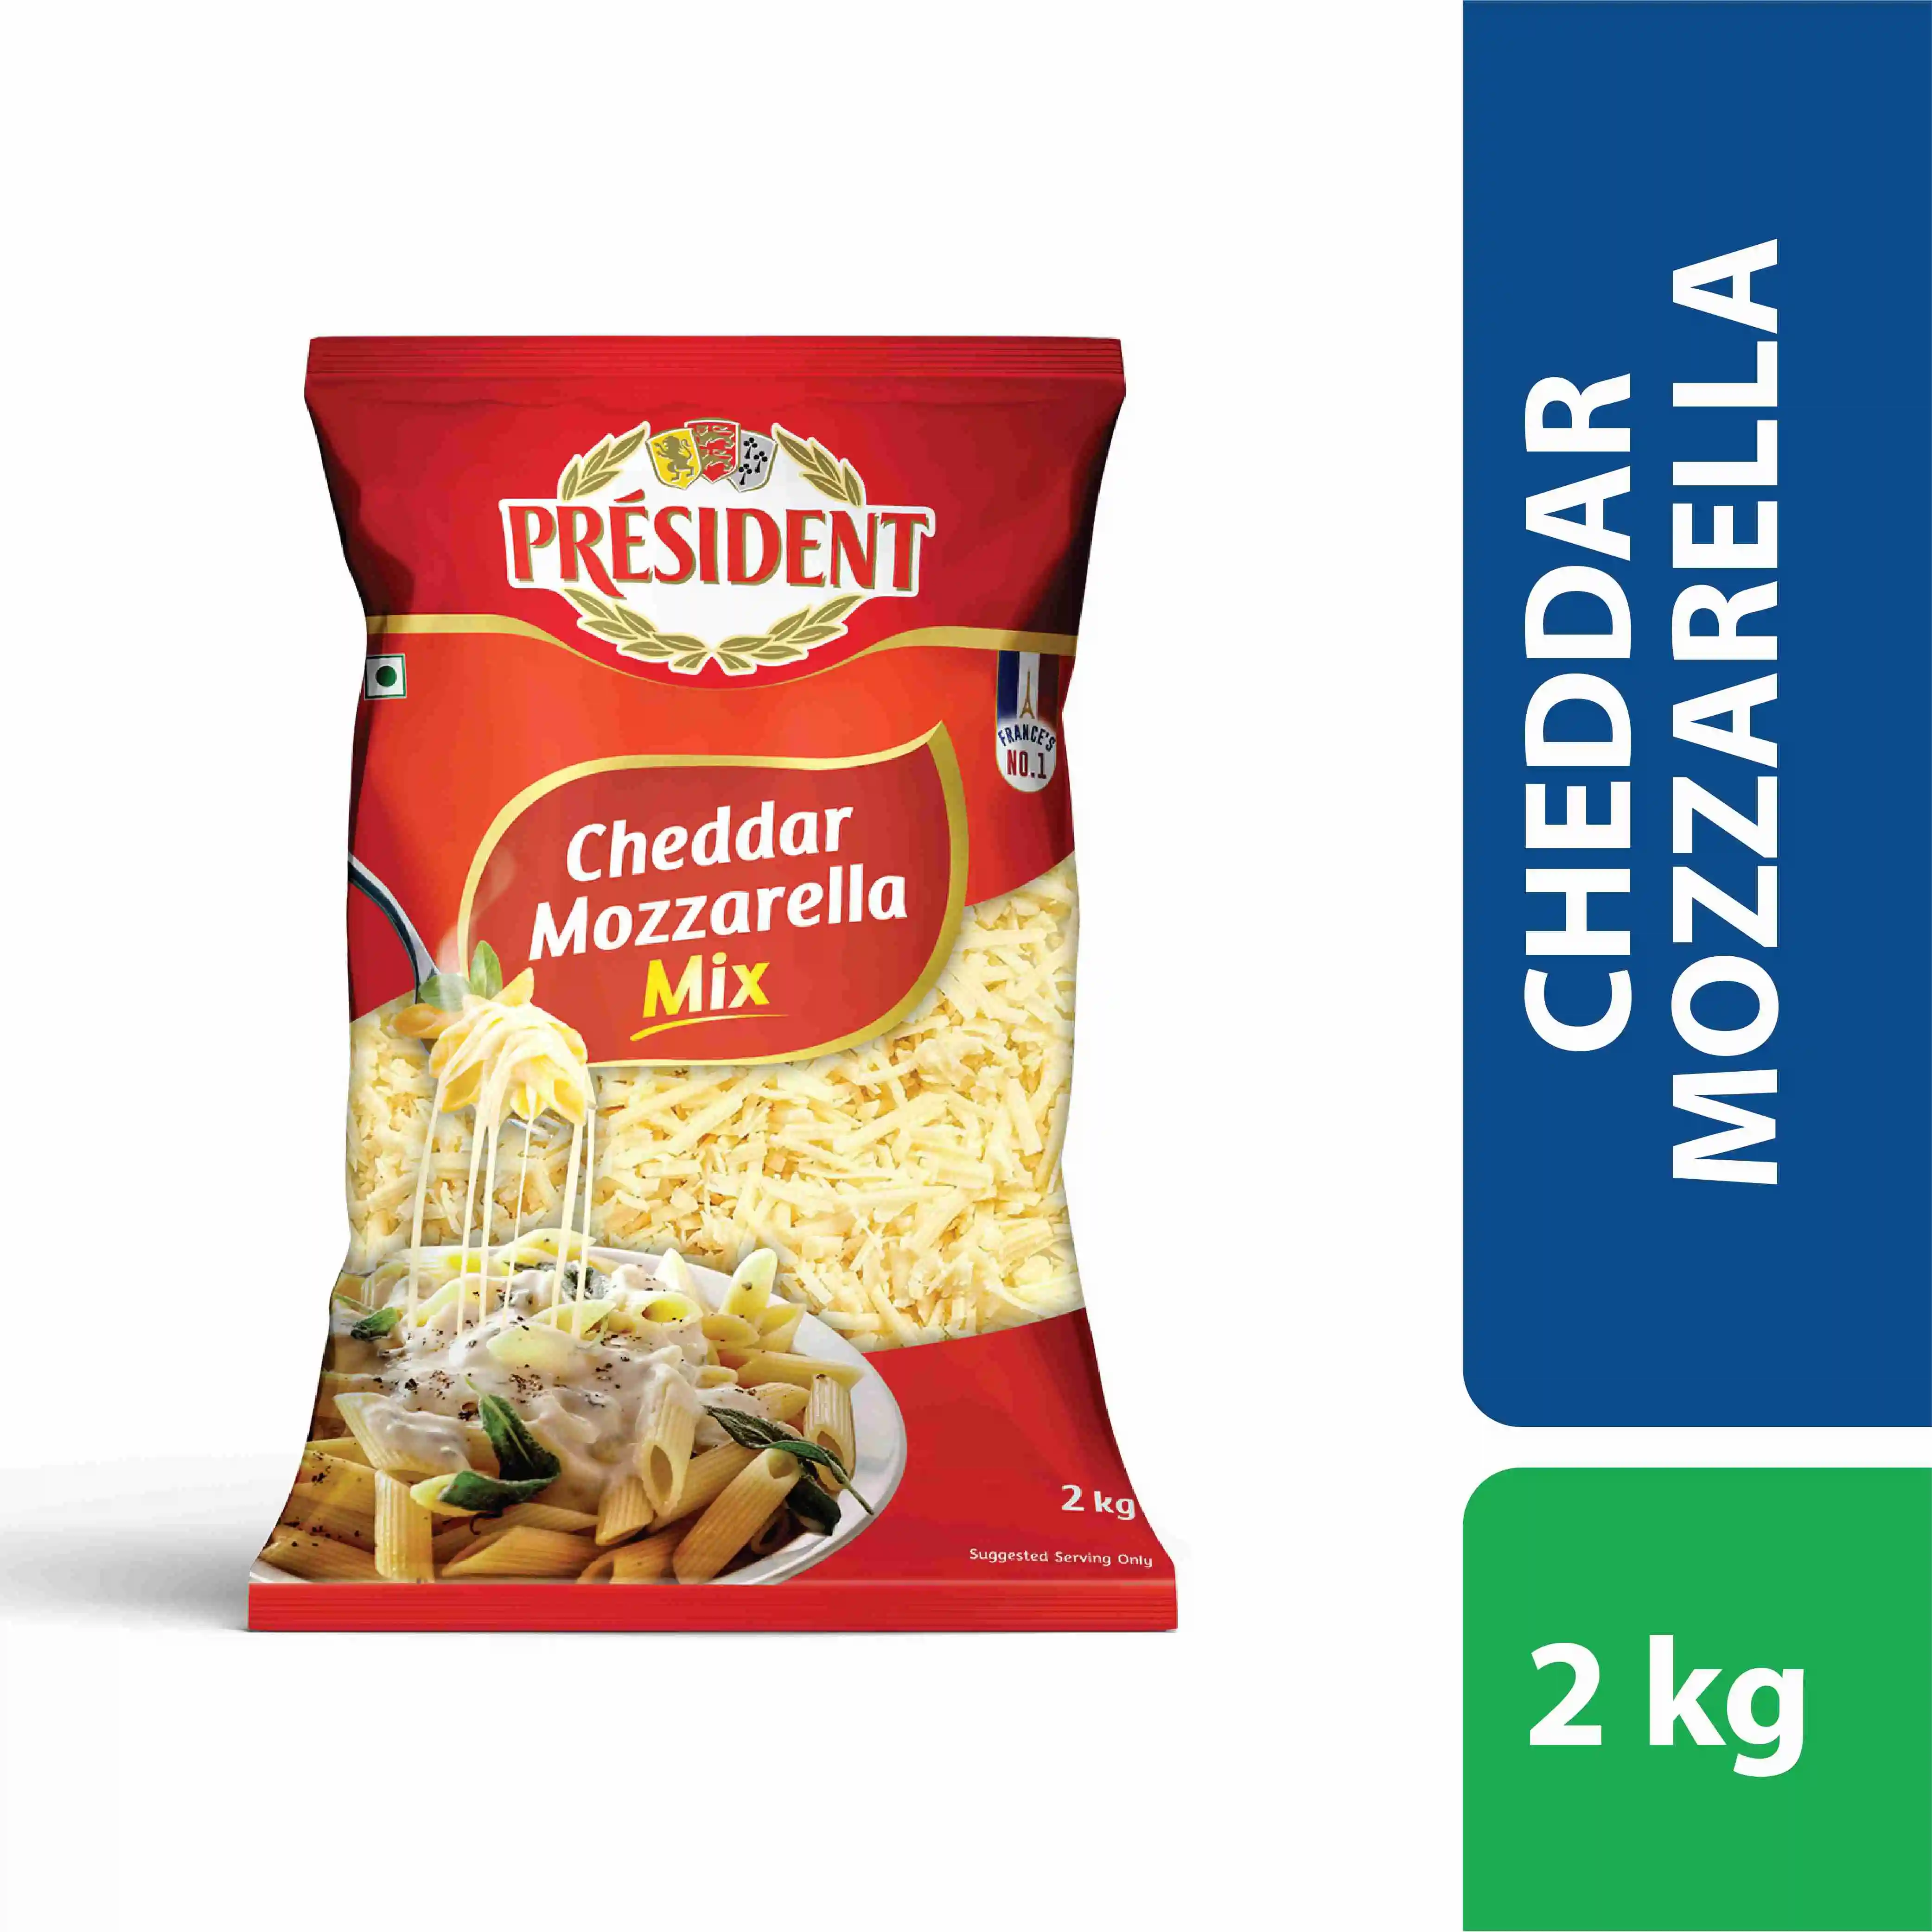 Président ® Cheddar Mozzarella Mix cheese shredded 2kg